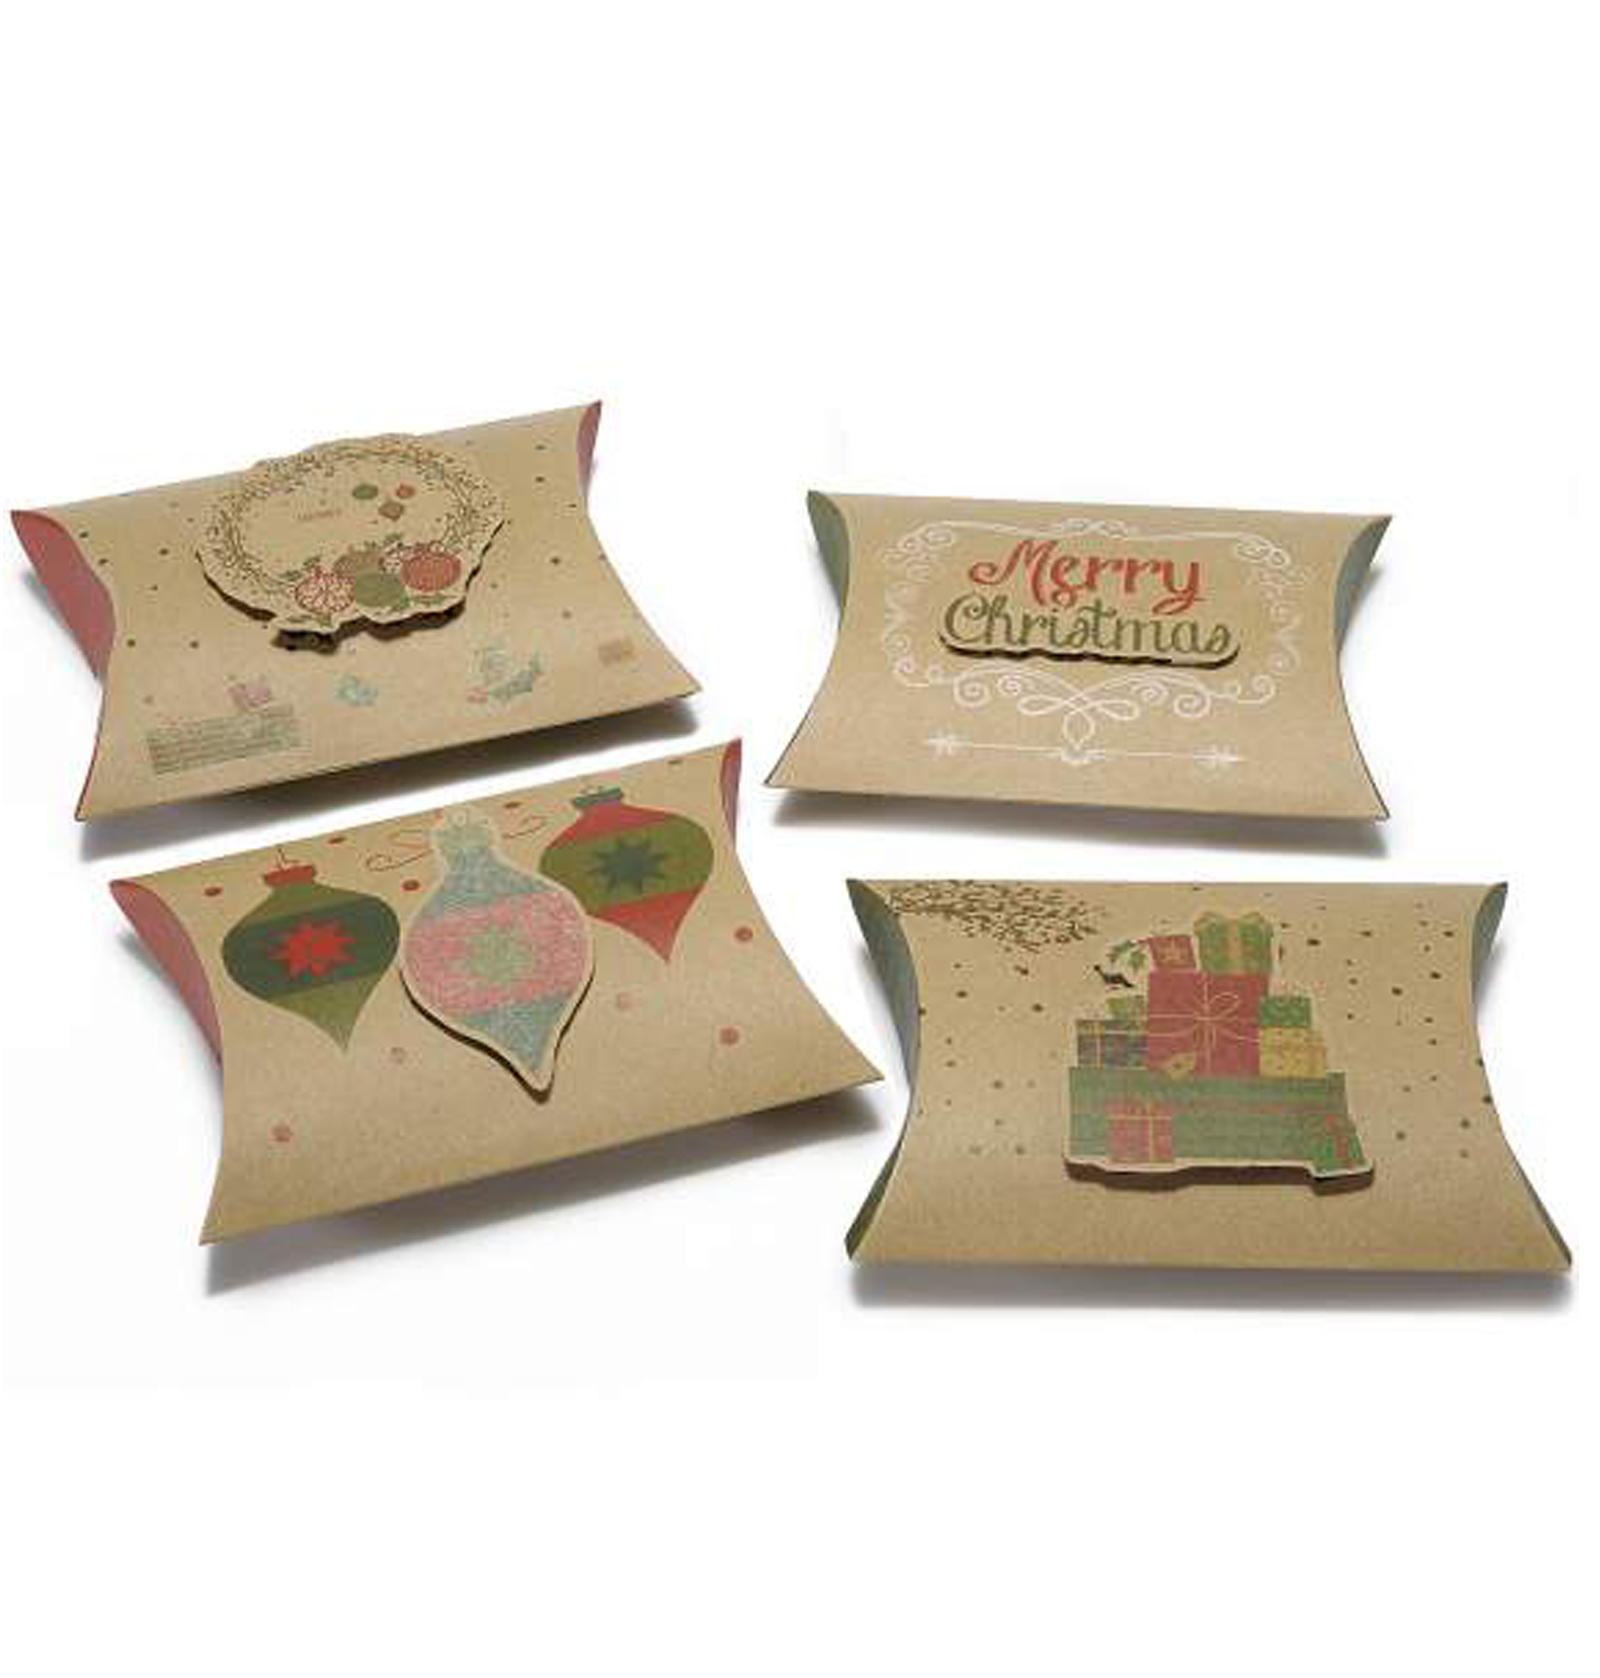 36Pz. Scatola regalo natalizia a cuscino in carta naturale con disegni in rilievo  Misure: cm 14,5 x 3 x 10,5 H